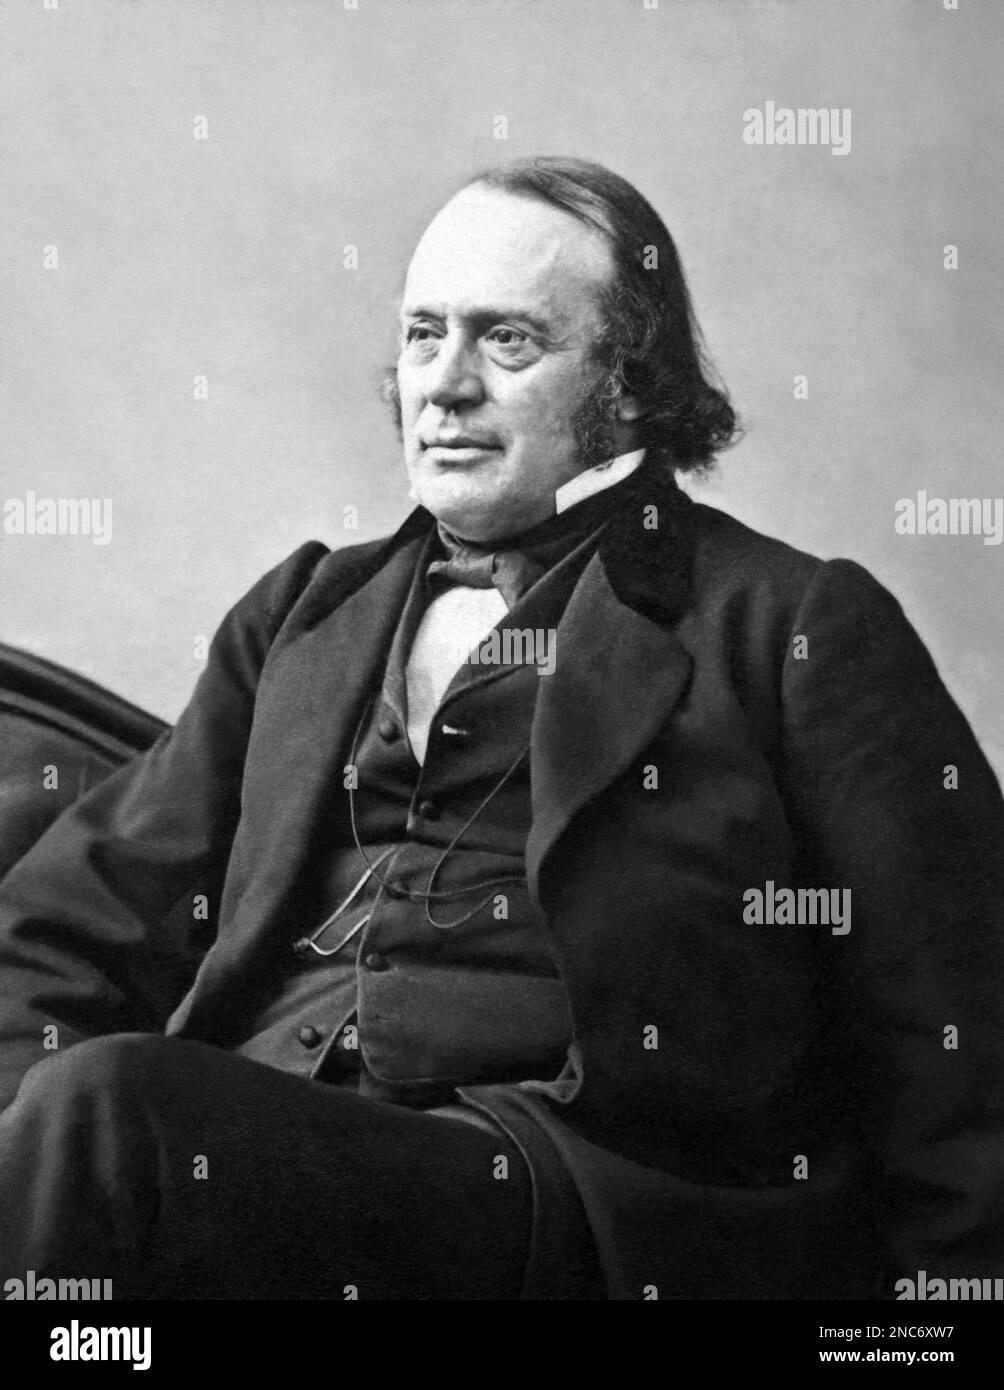 Louis Agassiz (1807-1873), géologue, zoologiste, paléontologue et scientifique de la nature de renom suisse-américain, était professeur à l'Université Harvard et critique ouvertement de la théorie de l'évolution de Darwin. (c1864 photo de A. Sonrel) Banque D'Images